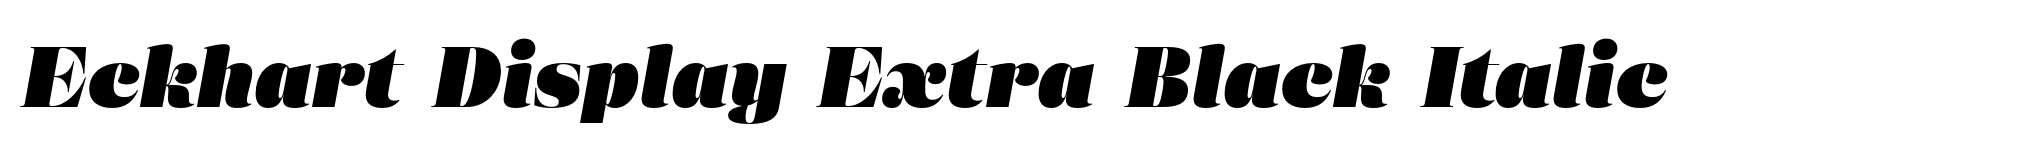 Eckhart Display Extra Black Italic image